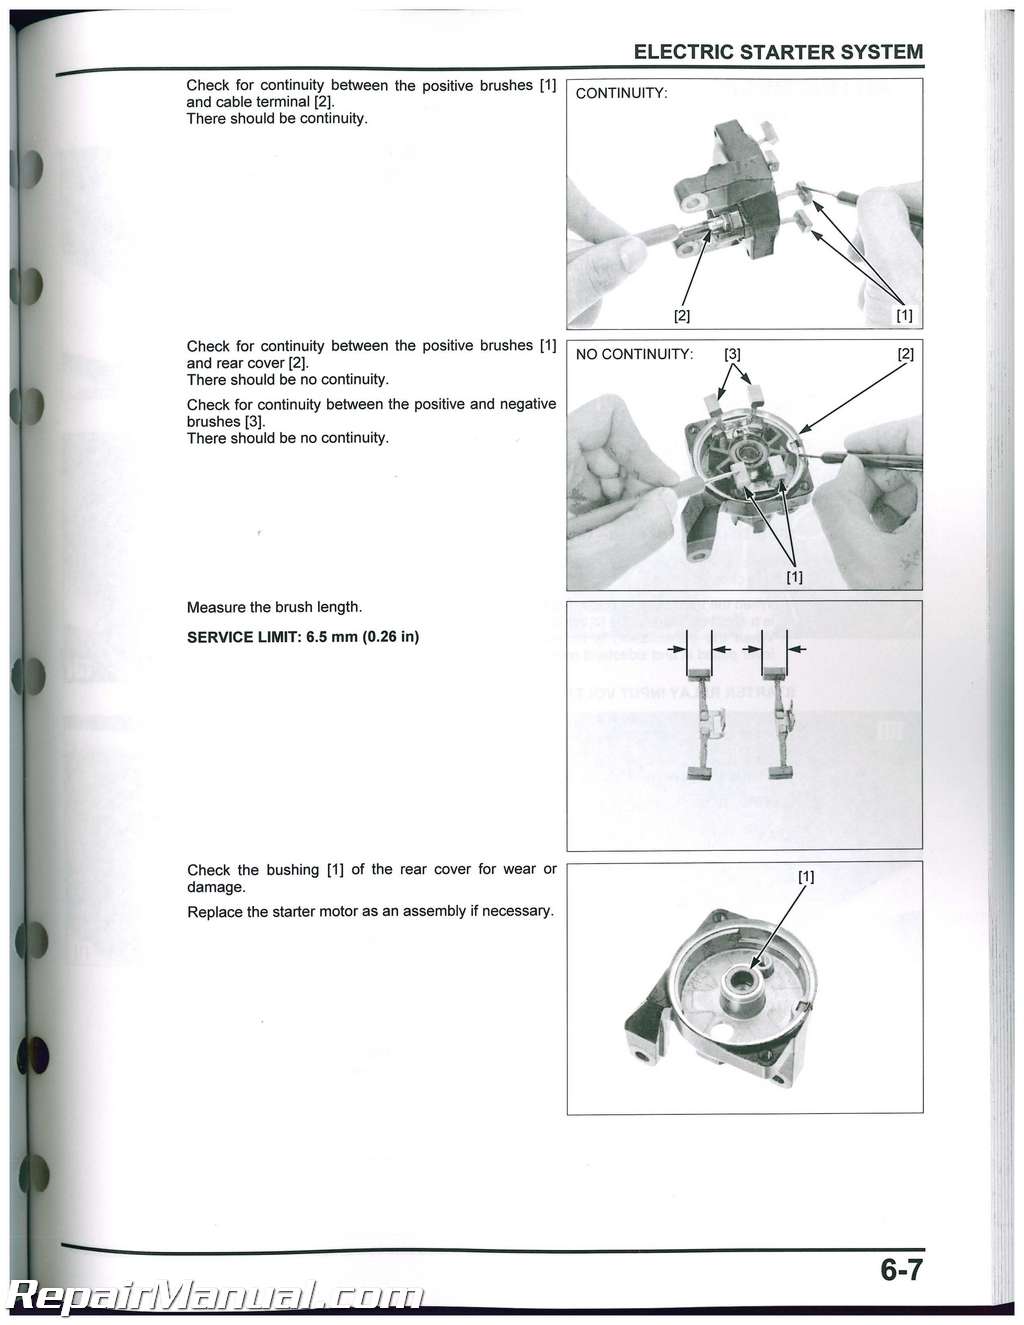 Crf250l Honda Motorcycle Service Manual 2013